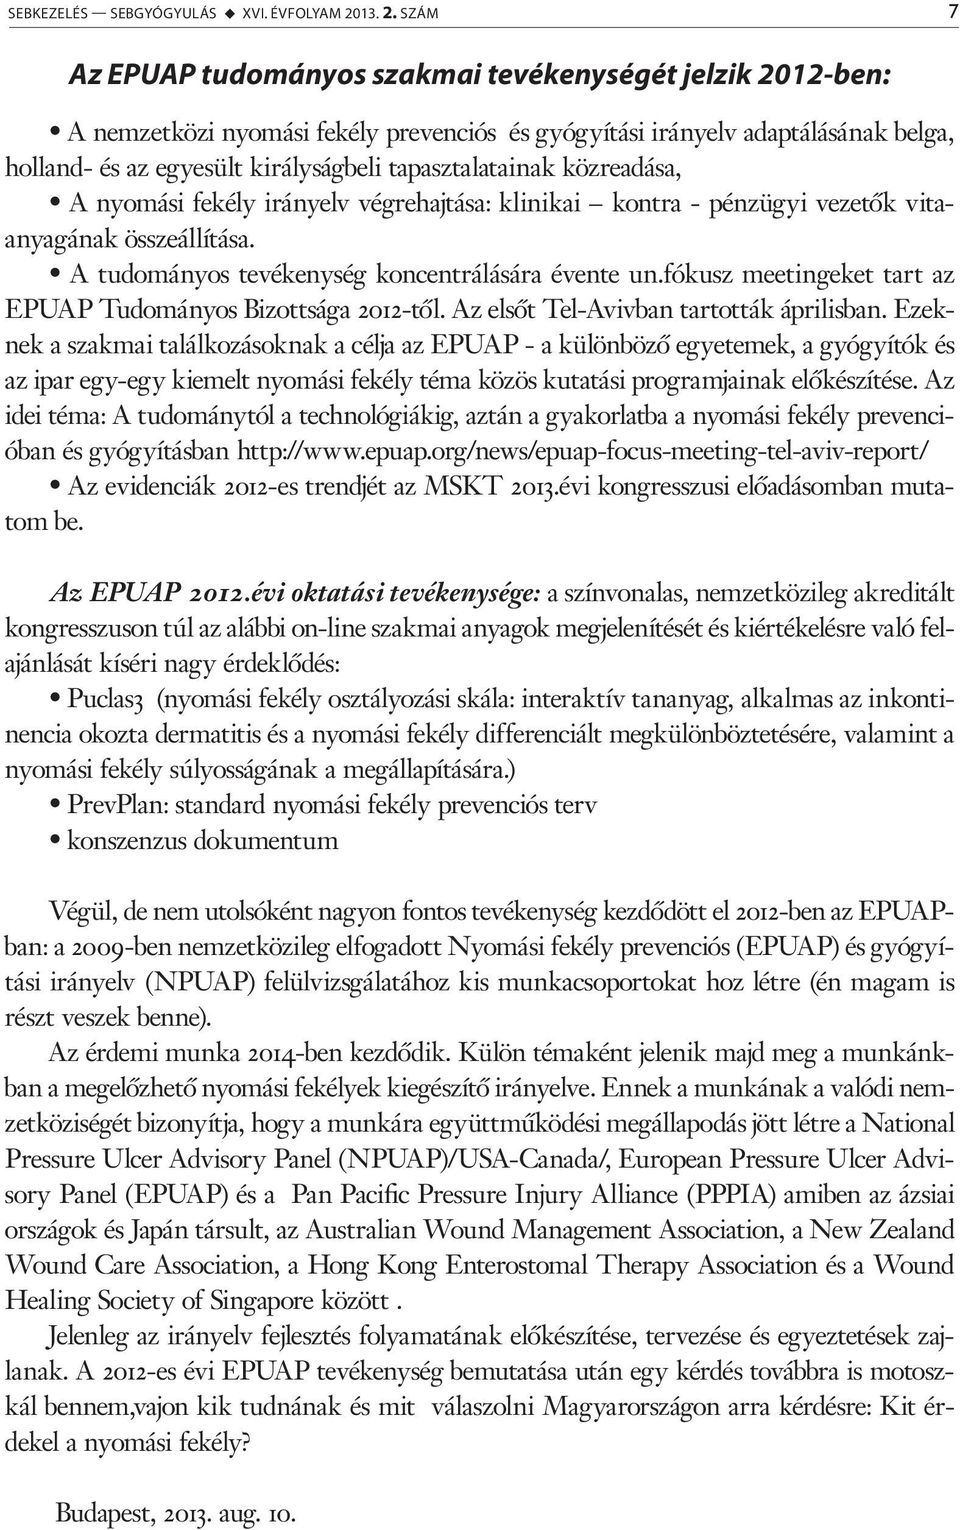 SZÁM 7 Az EPUAP tudományos szakmai tevékenységét jelzik 2012-ben: A nemzetközi nyomási fekély prevenciós és gyógyítási irányelv adaptálásának belga, holland- és az egyesült királyságbeli